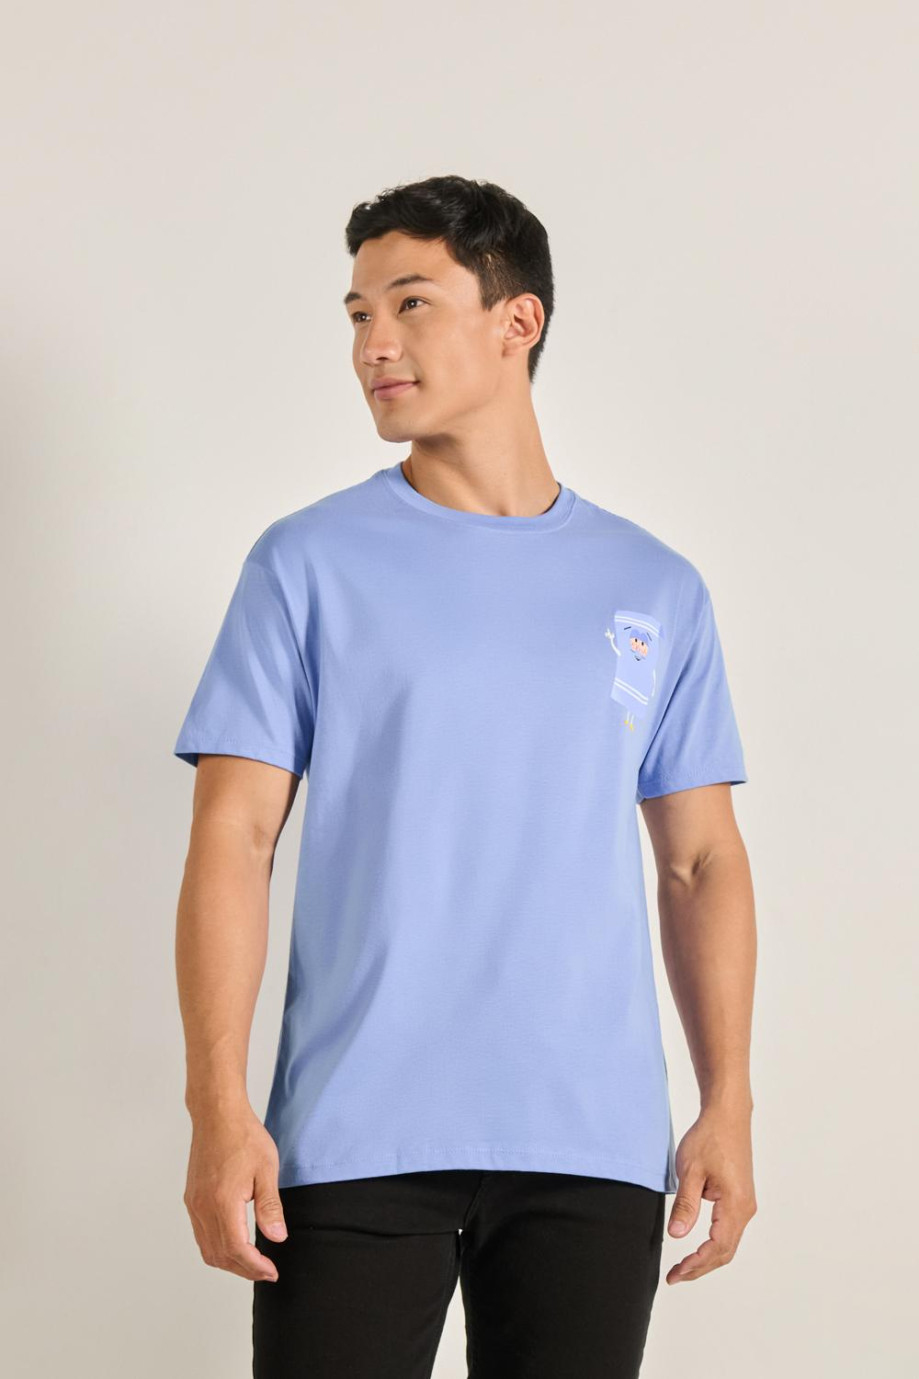 Camiseta azul clara manga corta con diseño de South Park